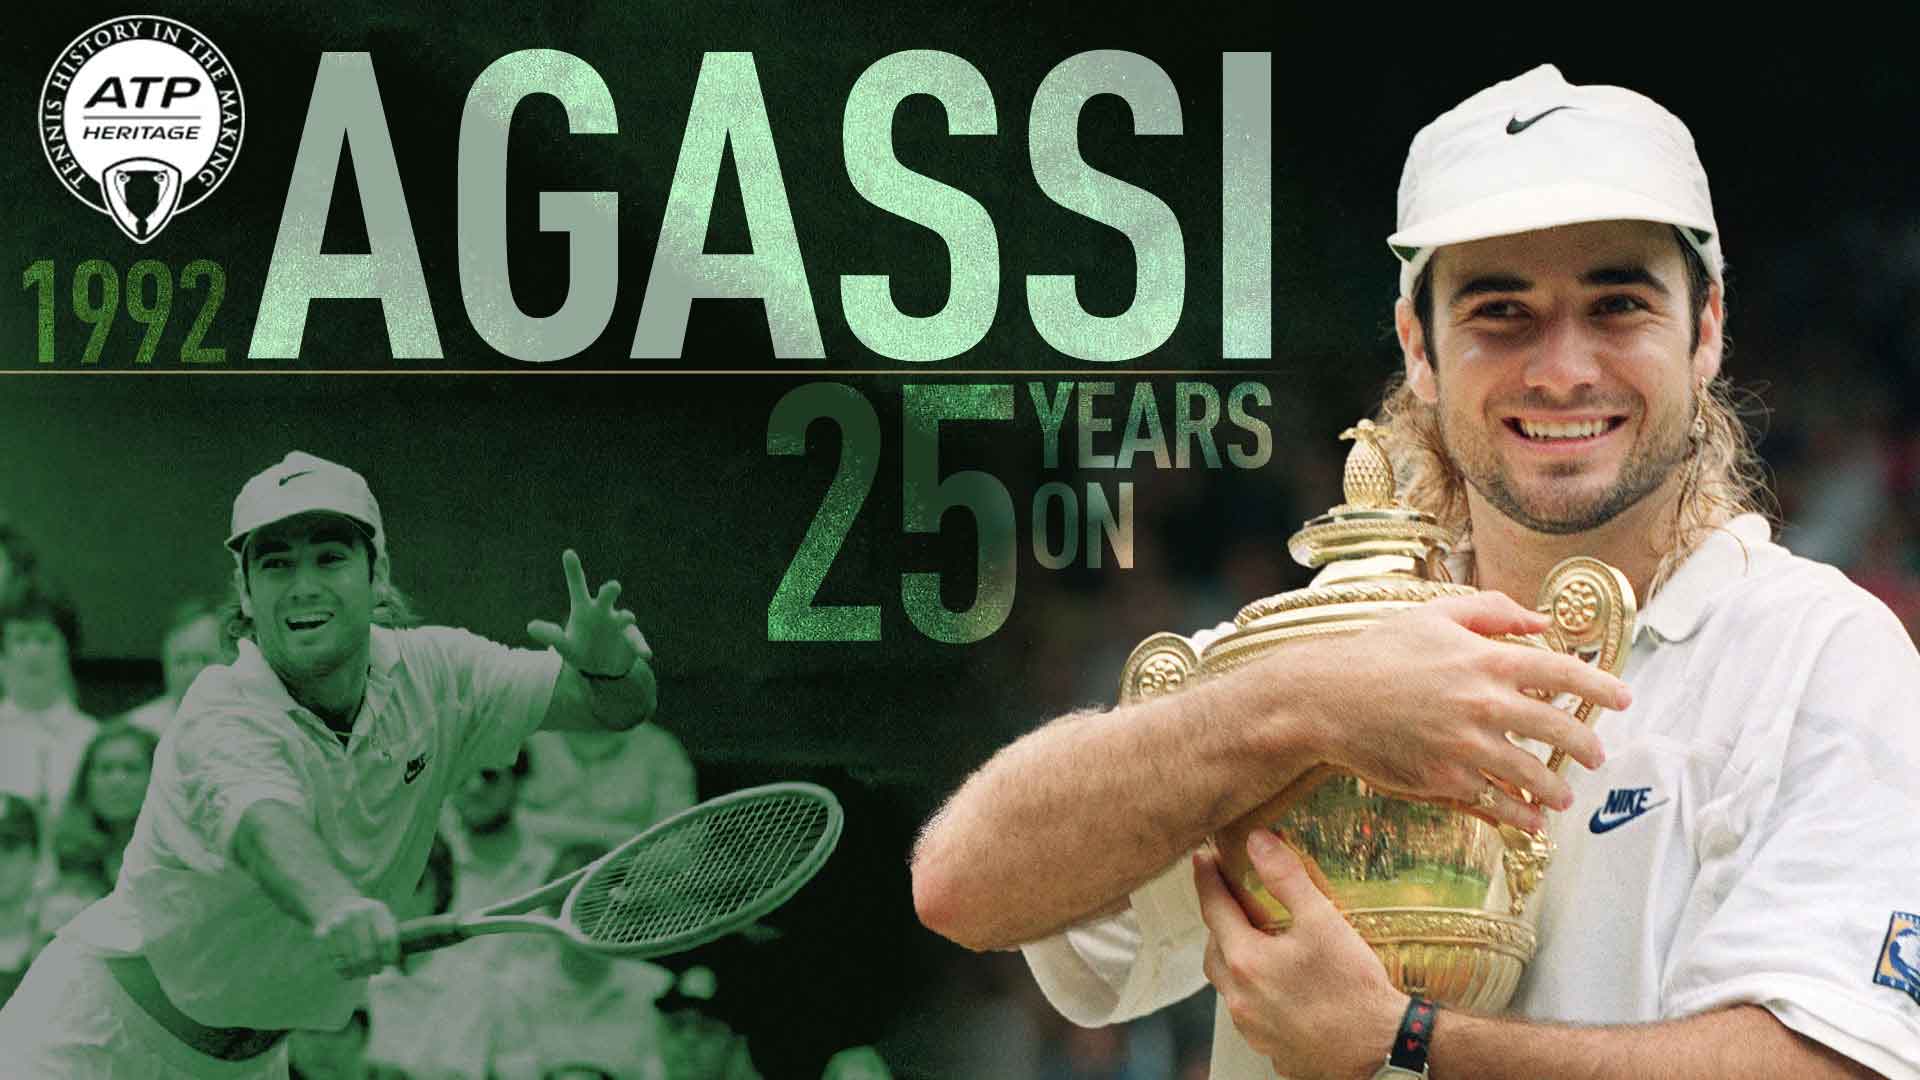 Después de auto imponerse un exilio, Andre Agassi regresó a Wimbledon y logró el título en 1992.